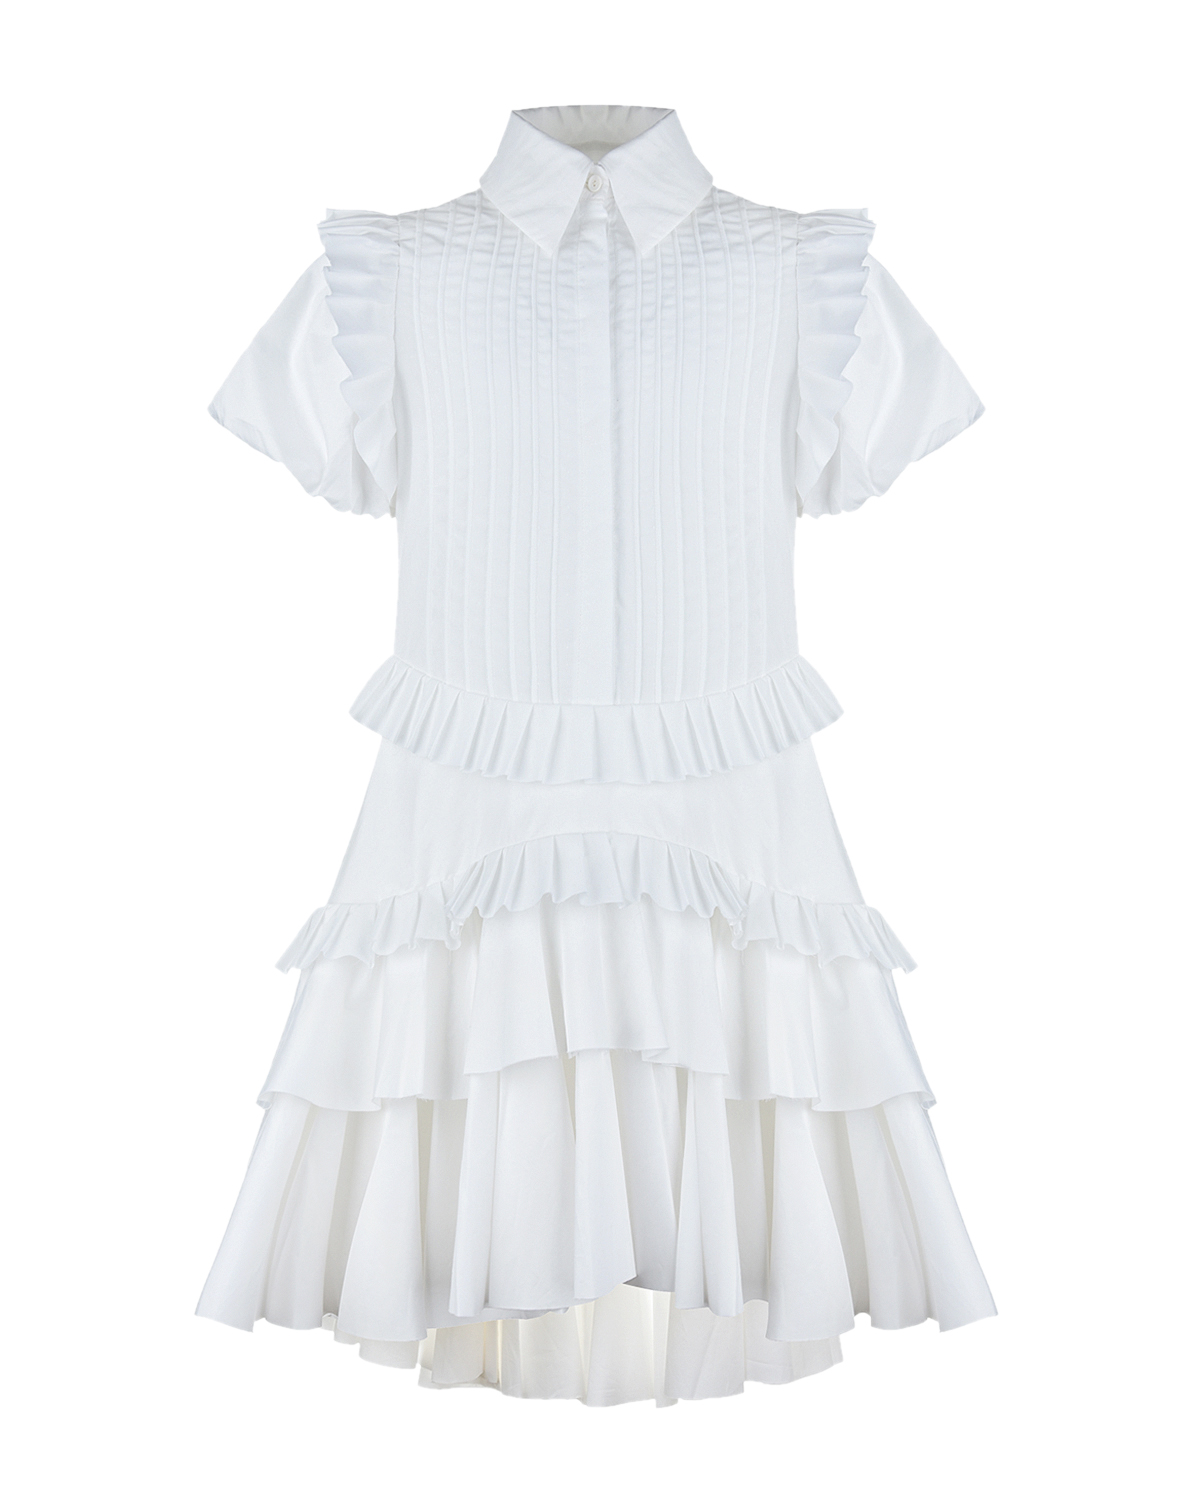 Белое платье с рукавами-фонариками Nikolia детское, размер 128, цвет белый - фото 1